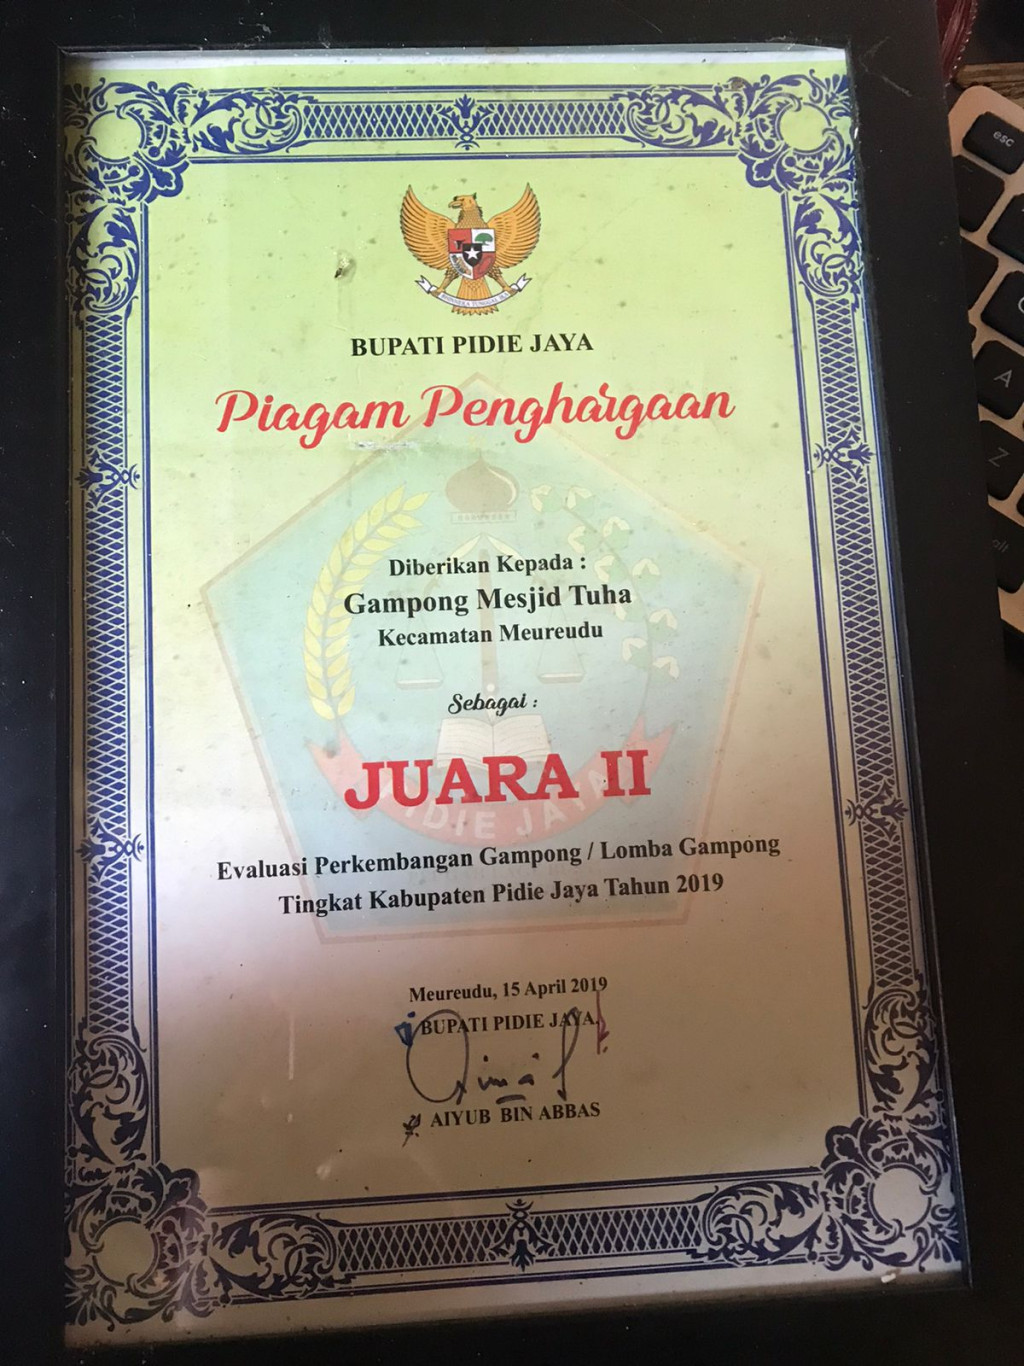 Juara 2 Evaluasi Perkembangan Gampong tingkat Kabupaten Pidie Jaya 2019